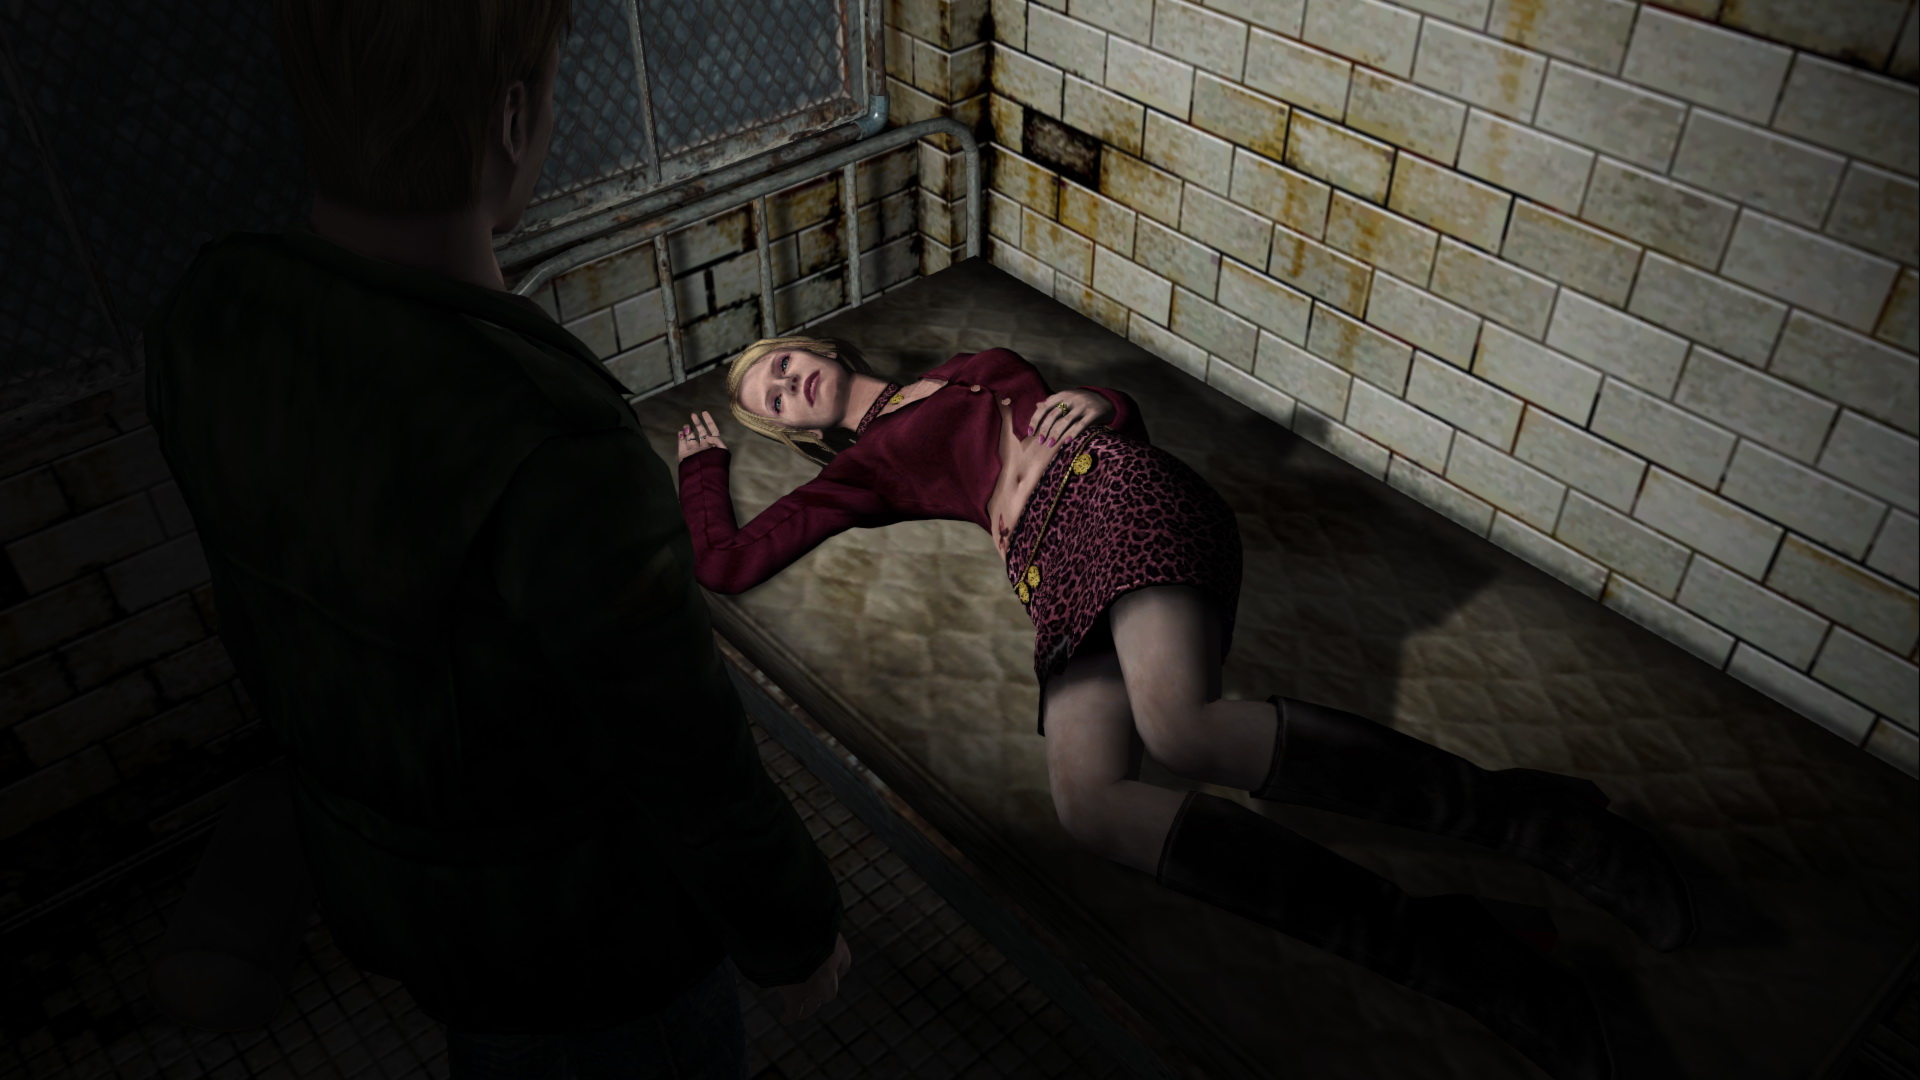 Silent Hill 2: Enhanced Edition on X:  / X